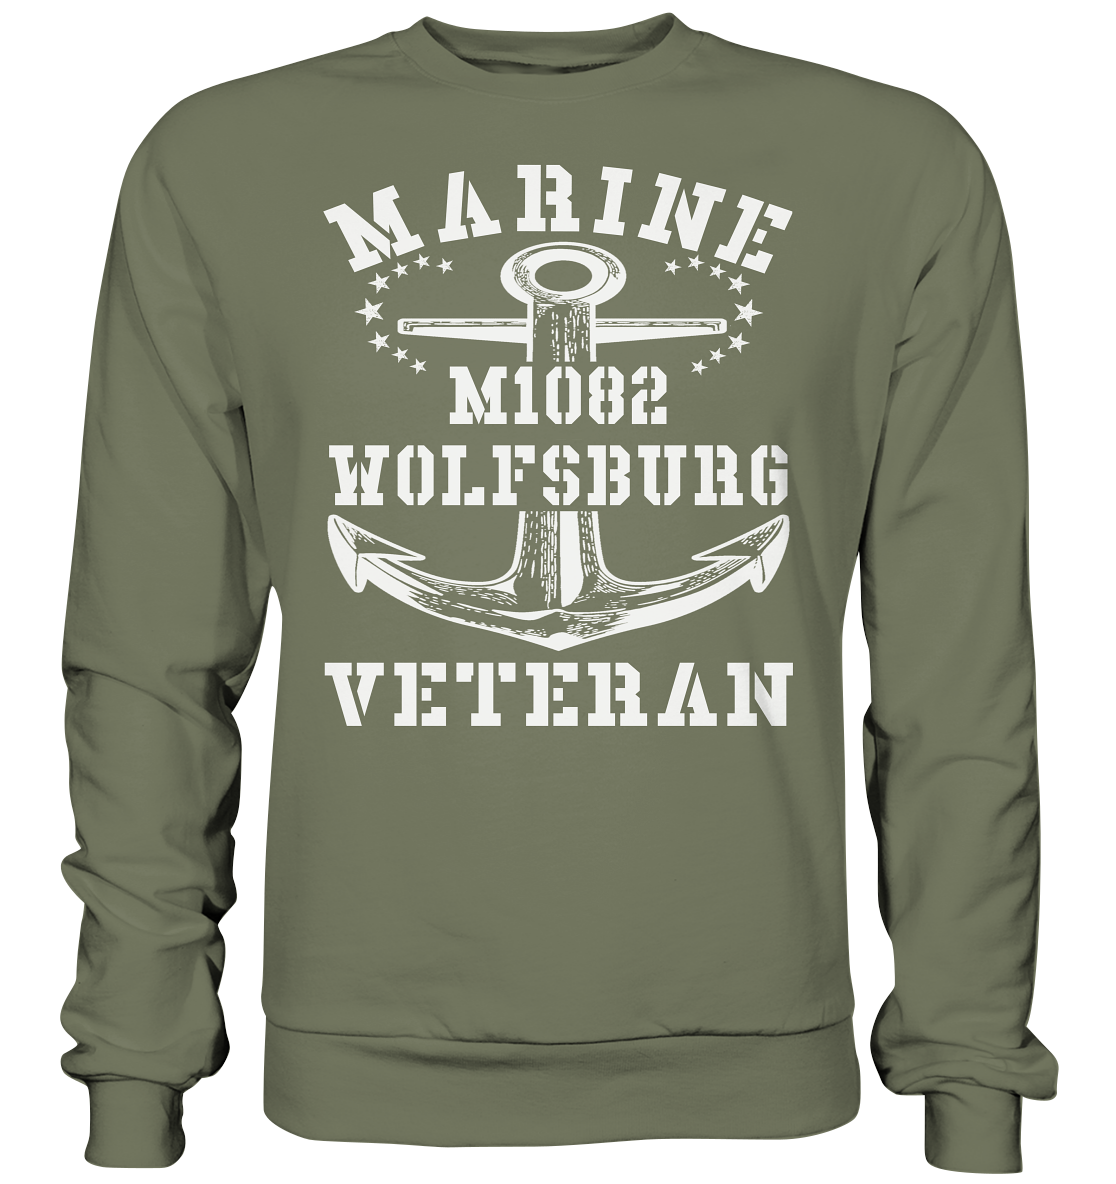 MARINE VETERAN M1082 WOLFSBURG - Premium Sweatshirt